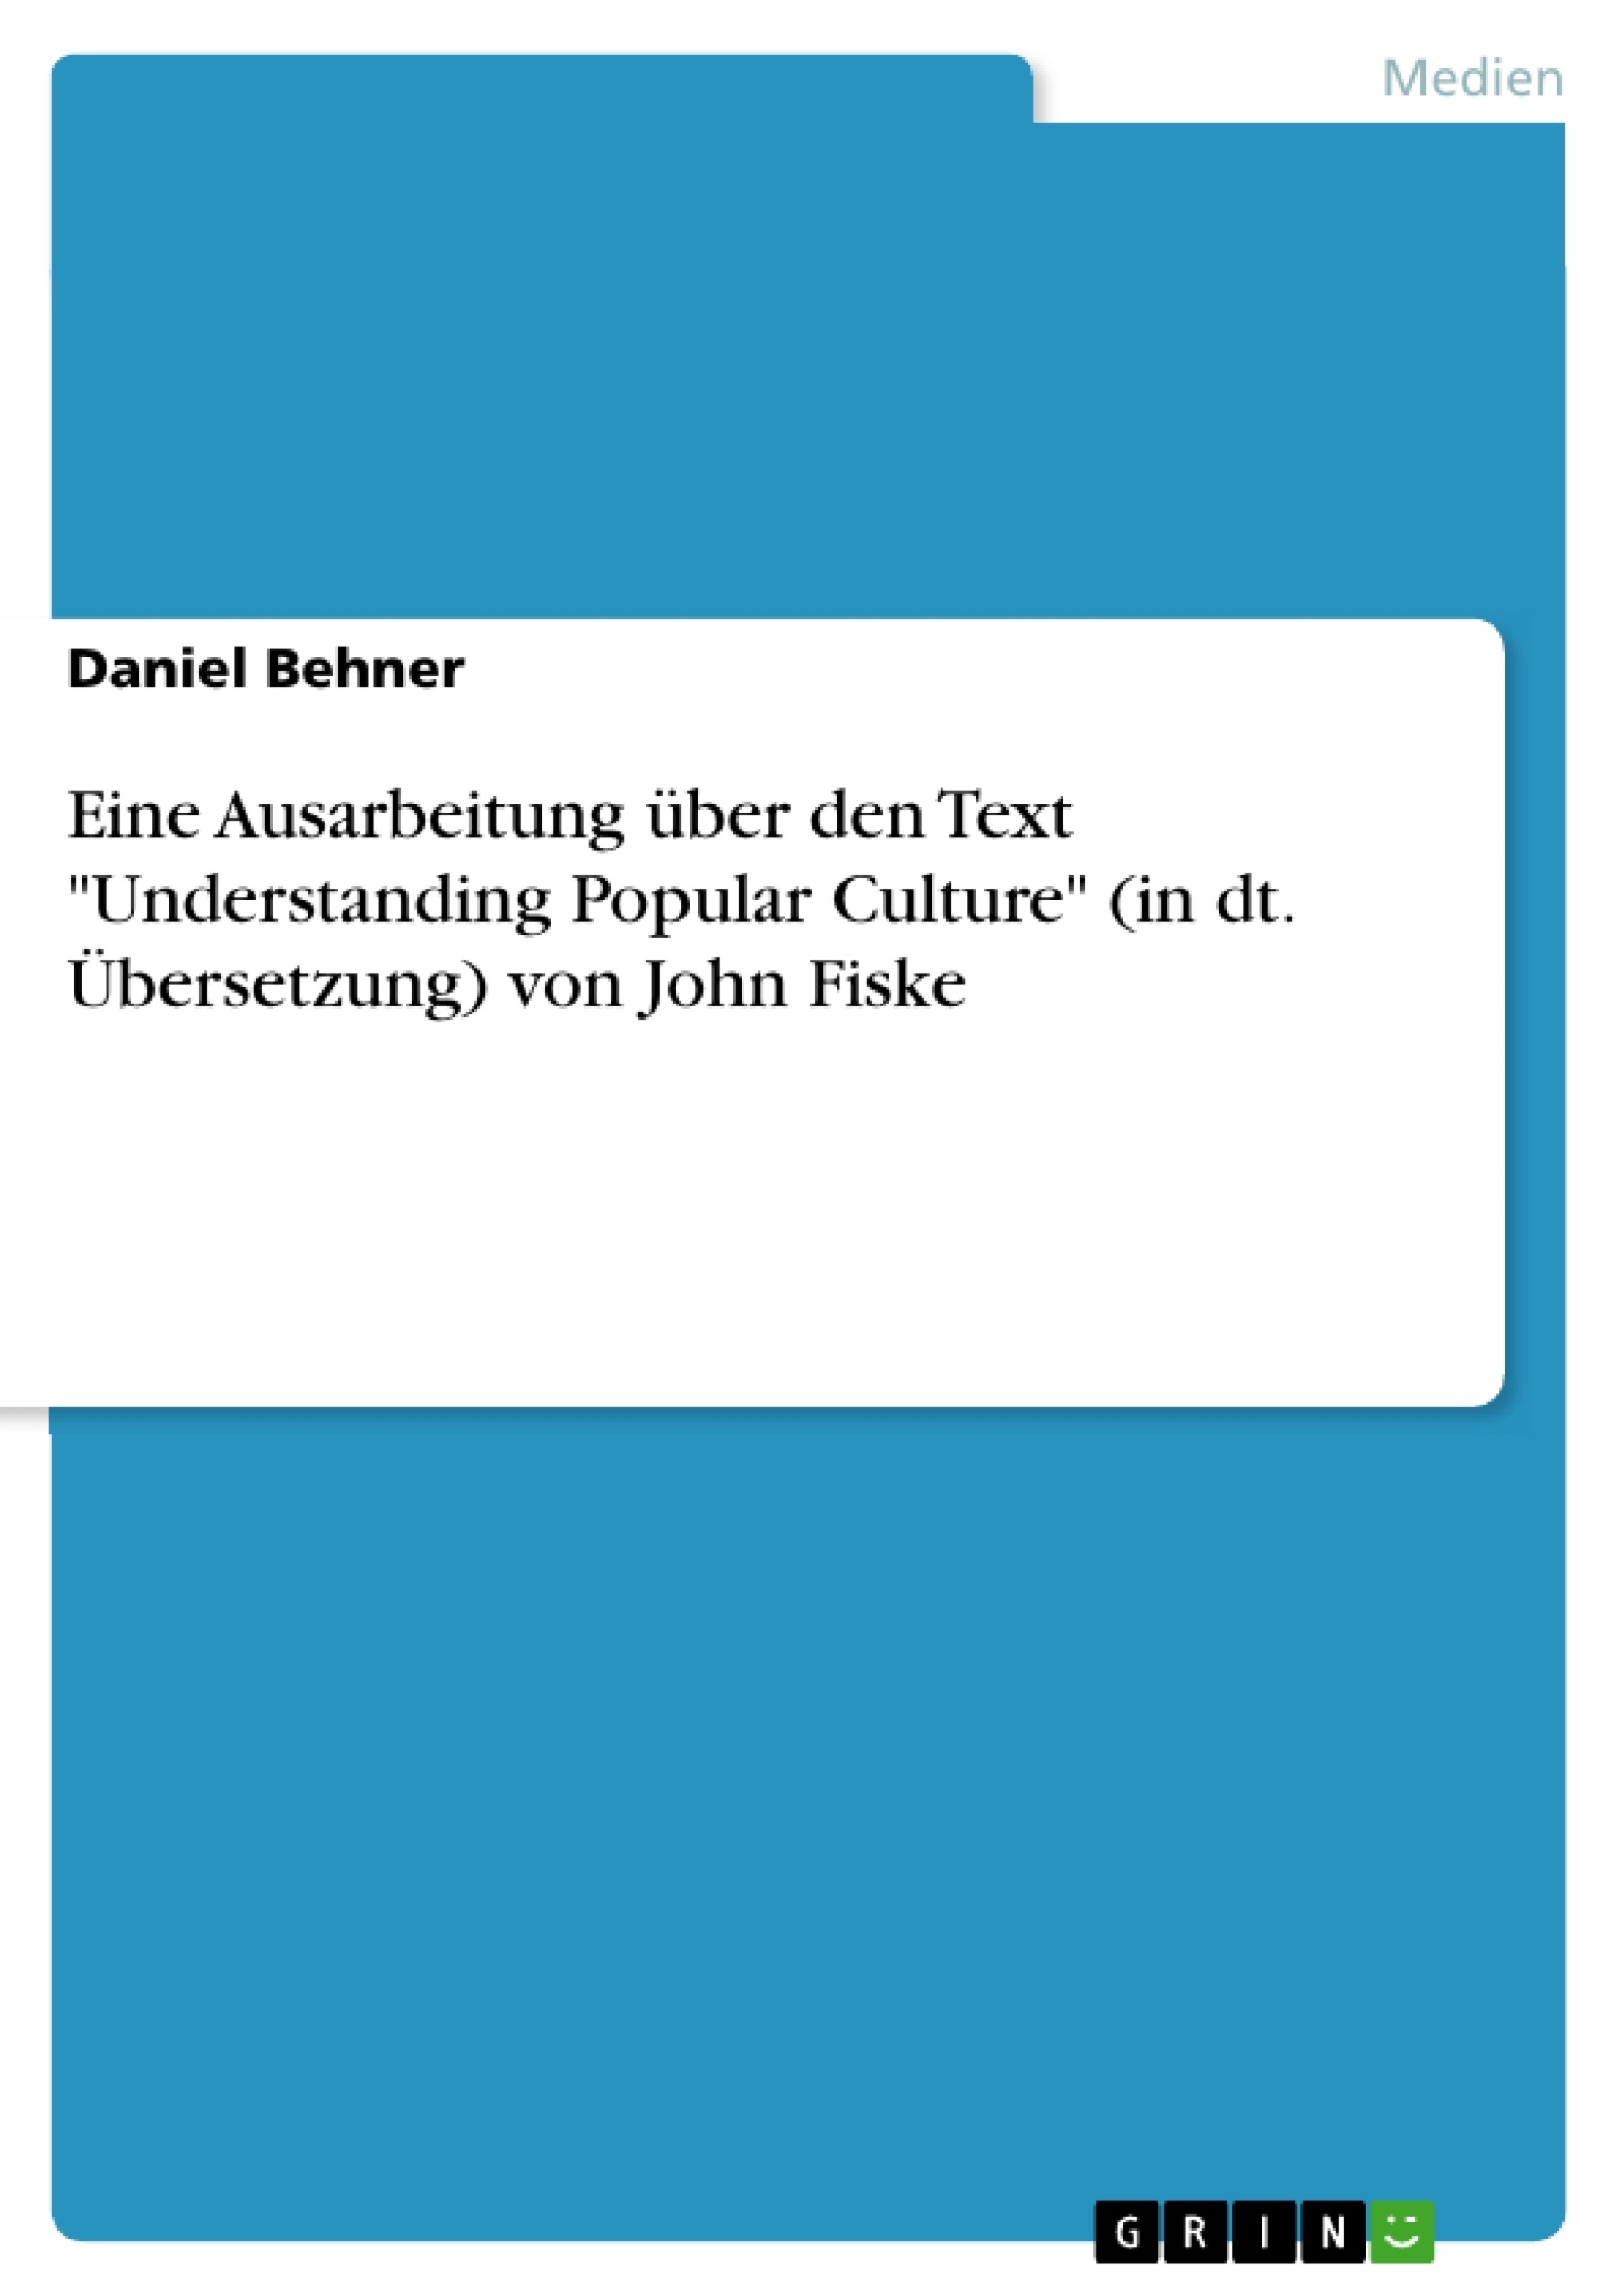 Titre: Eine Ausarbeitung über den Text "Understanding Popular Culture" (in dt. Übersetzung) von John Fiske